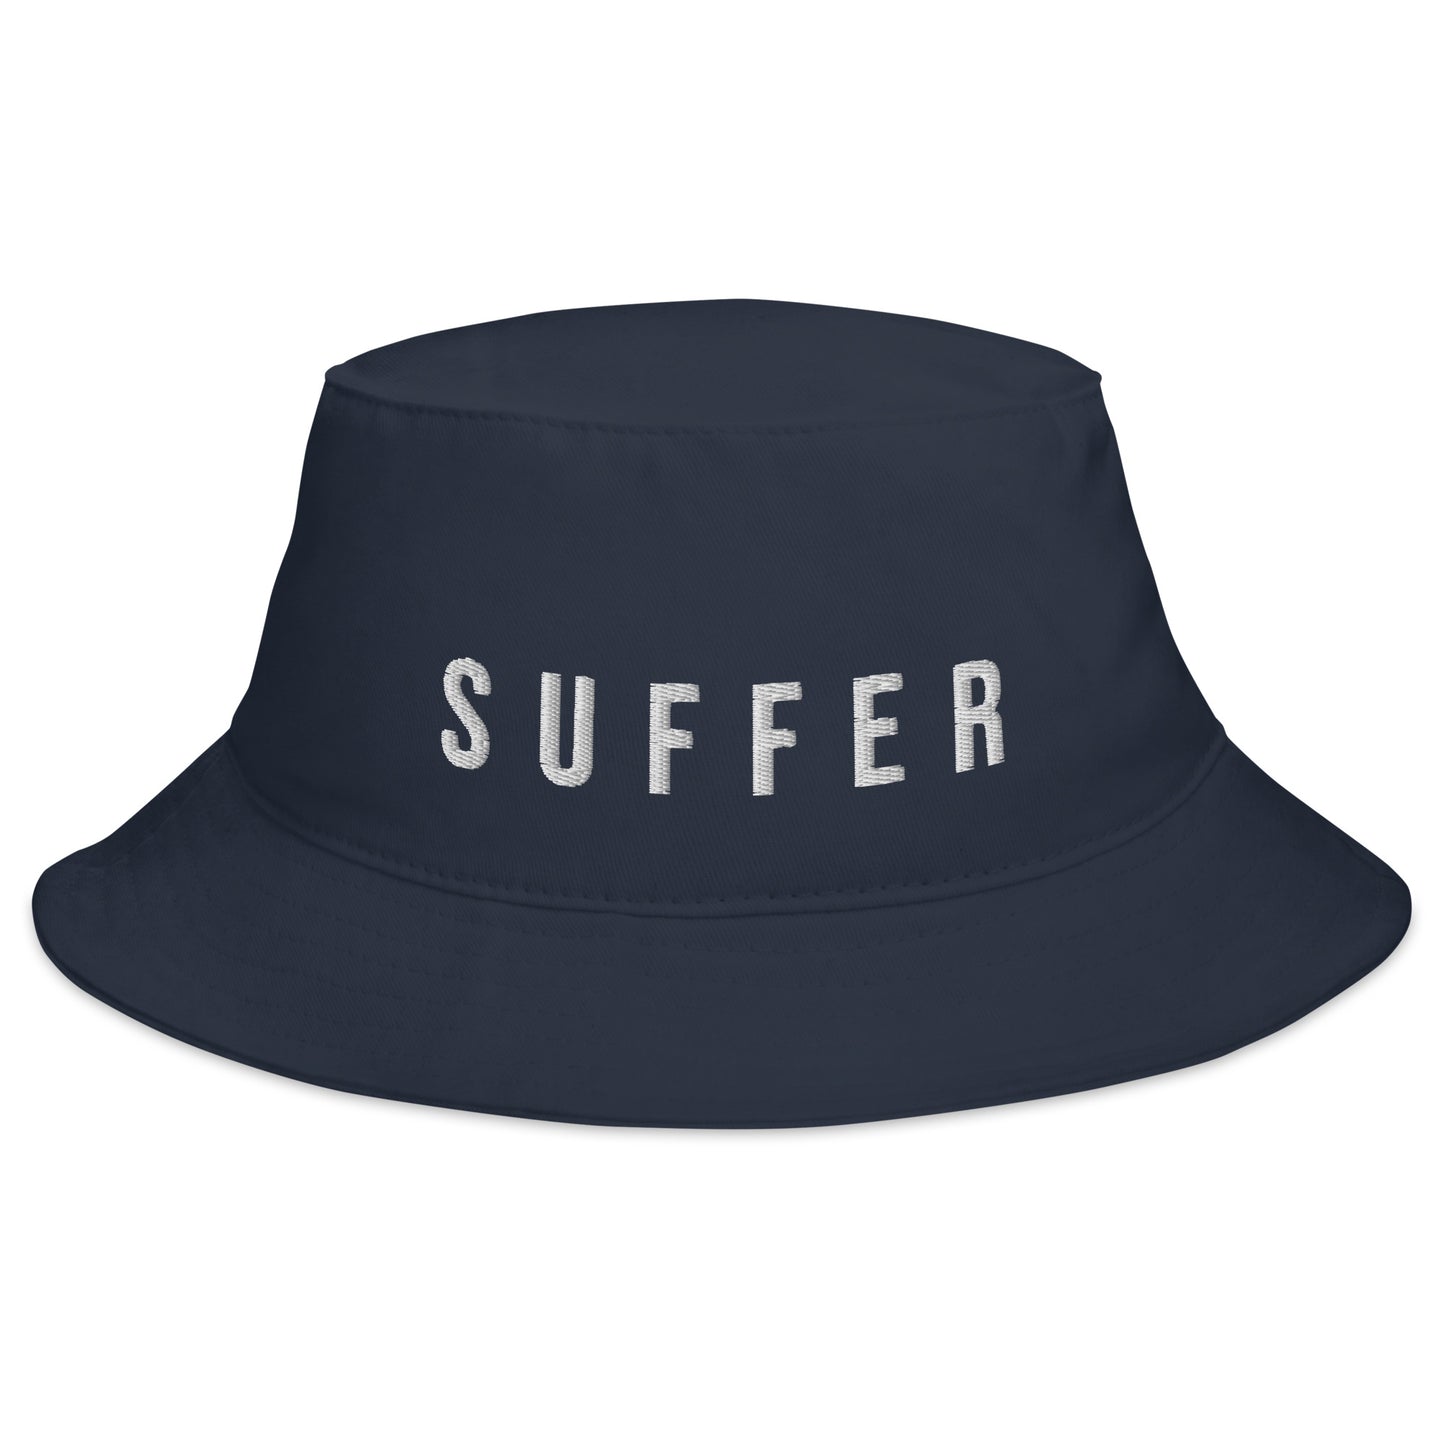 S U F F E R Bucket Hat